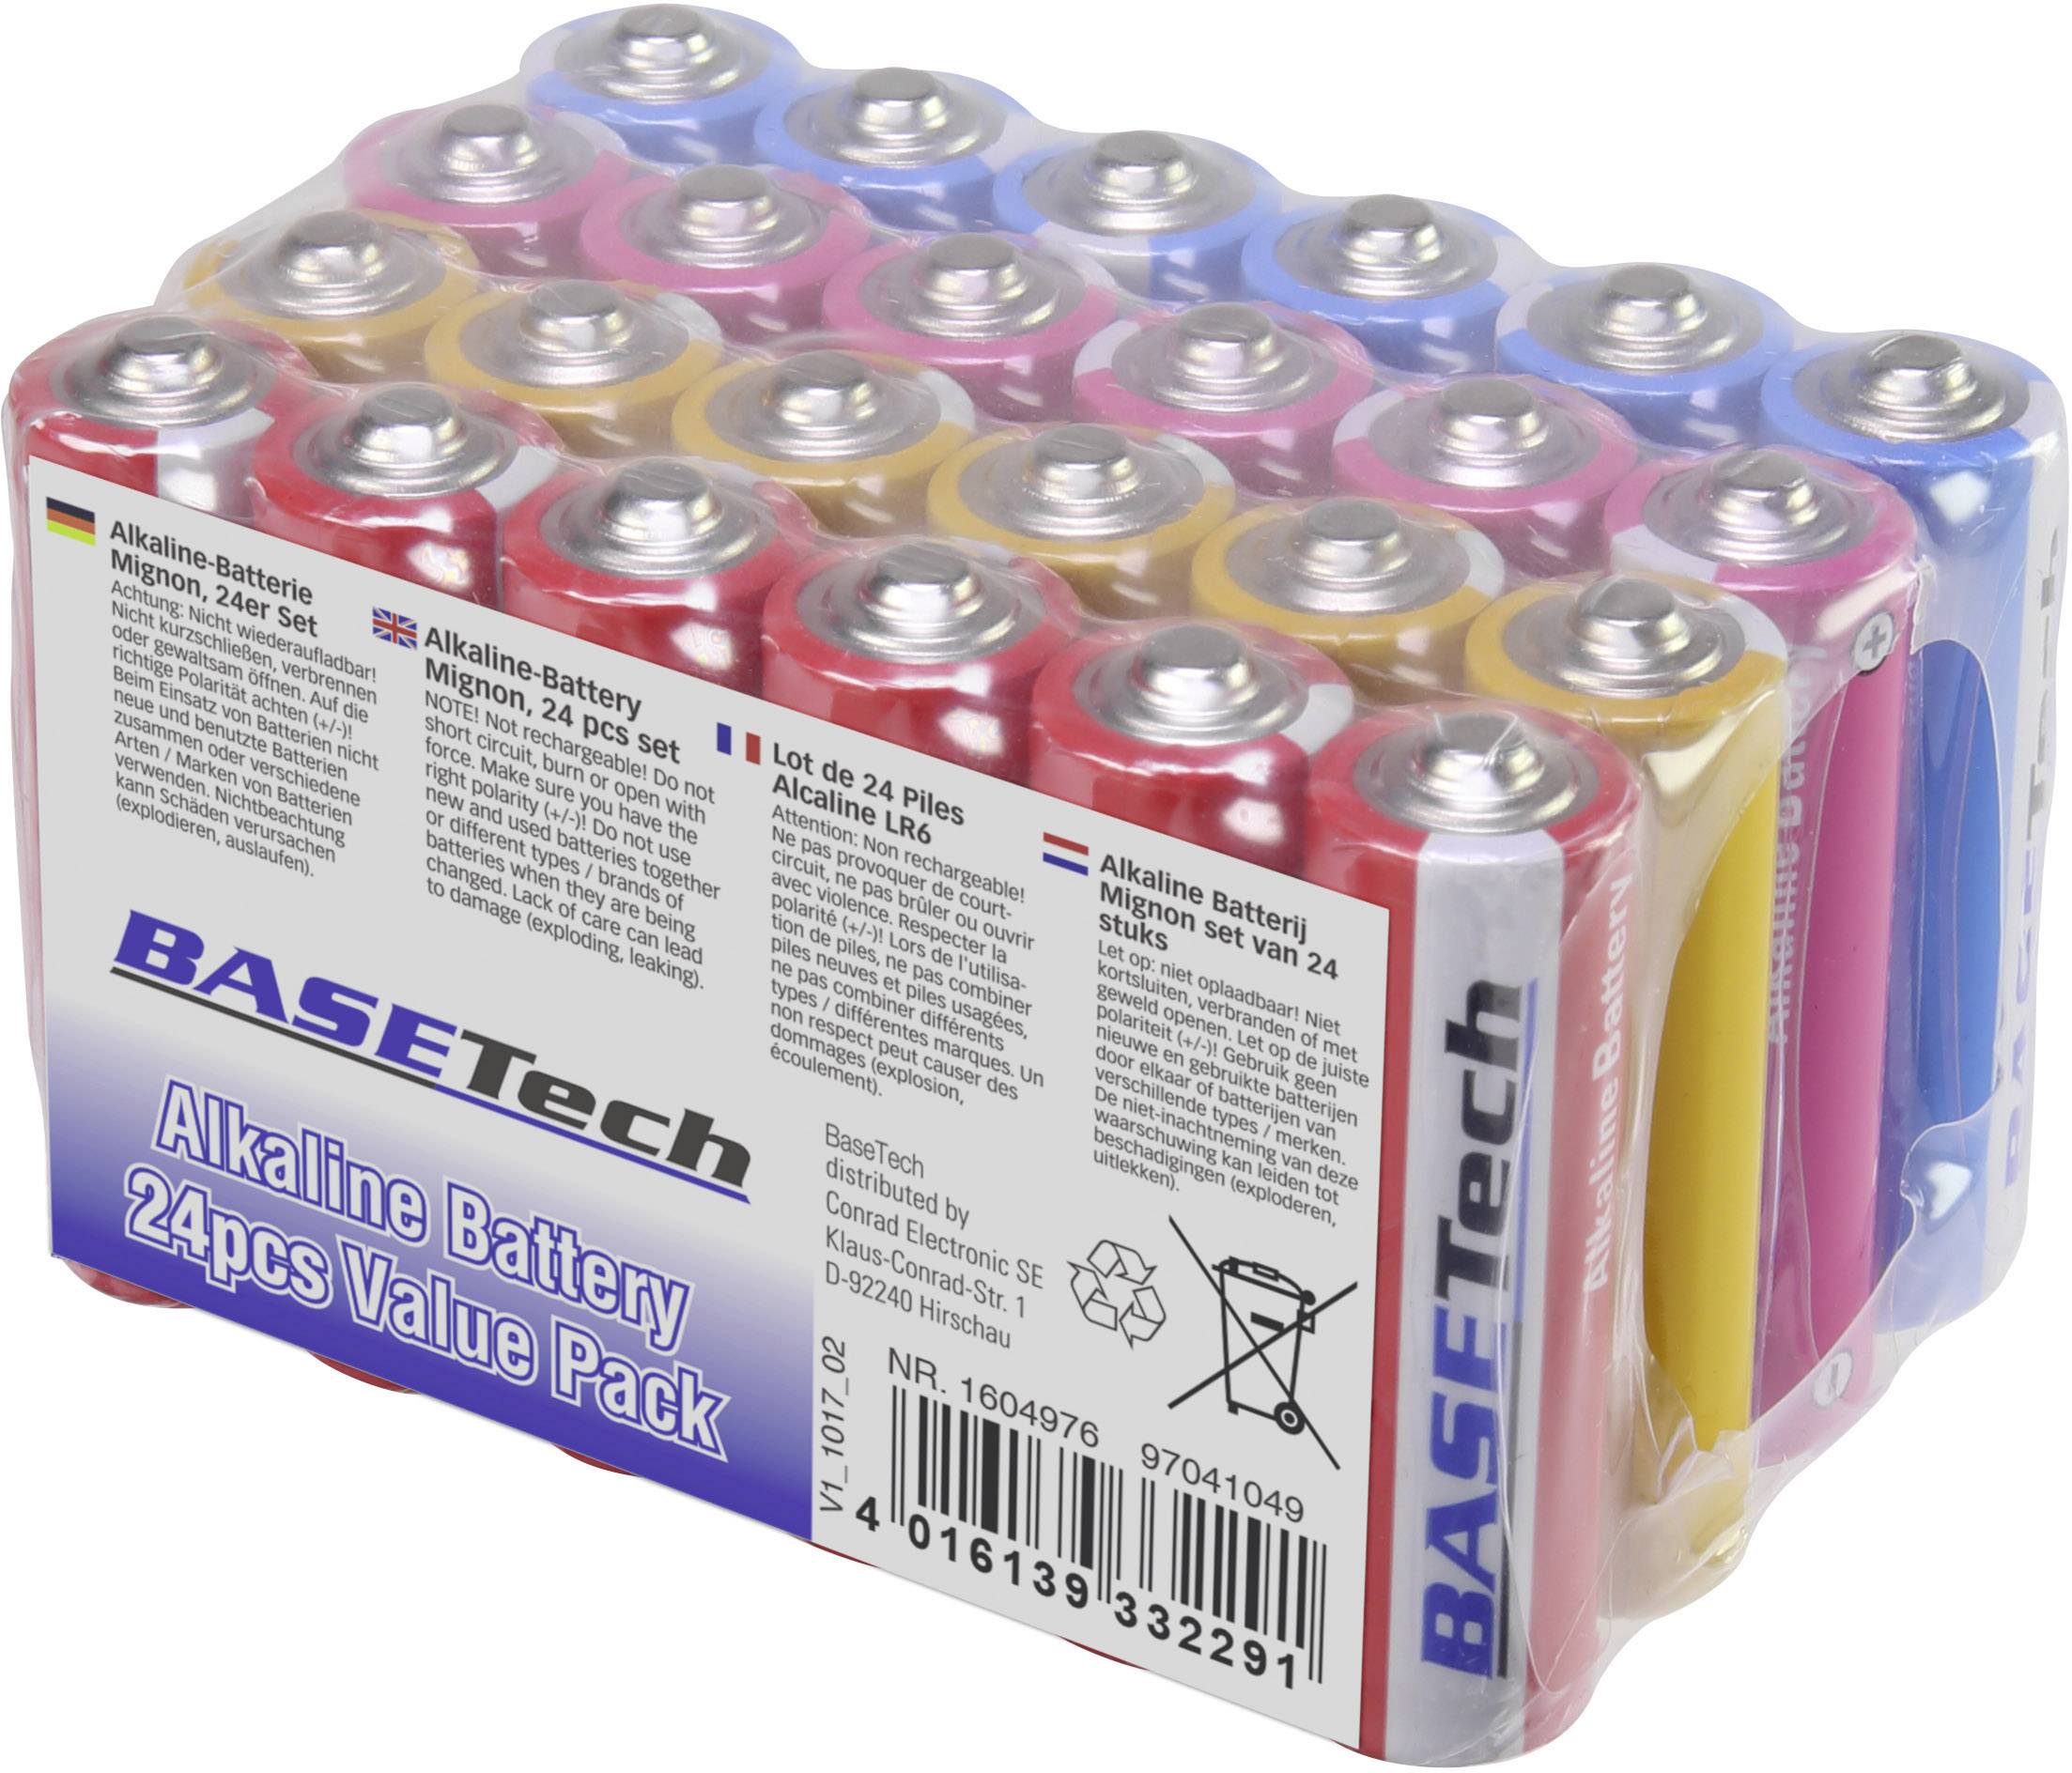 volwassene Verbonden Winkelcentrum Basetech AA batterij (penlite) Alkaline 2650 mAh 1.5 V 24 stuk(s) kopen ?  Conrad Electronic